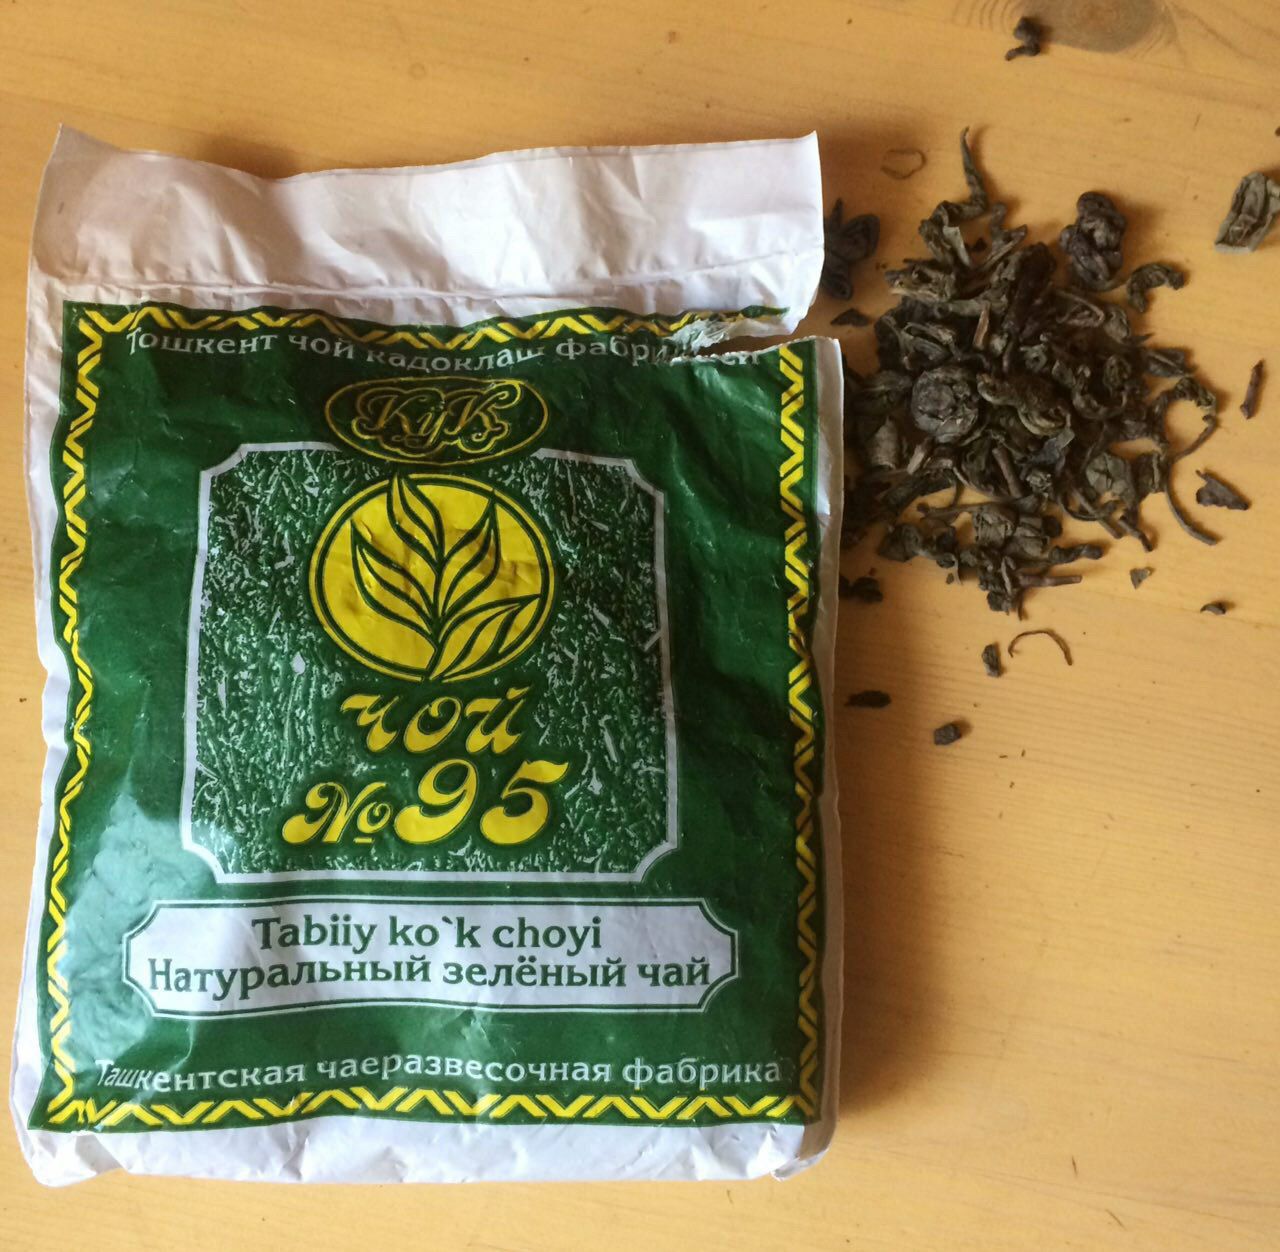 Узбекский чай 95. Чай зеленый 95 Ташкентская чаеразвесочная фабрика. 95 Чай зеленый узбекский. Чай зелёный 95 Узбекистан. Чай 95 зеленый Ташкент.